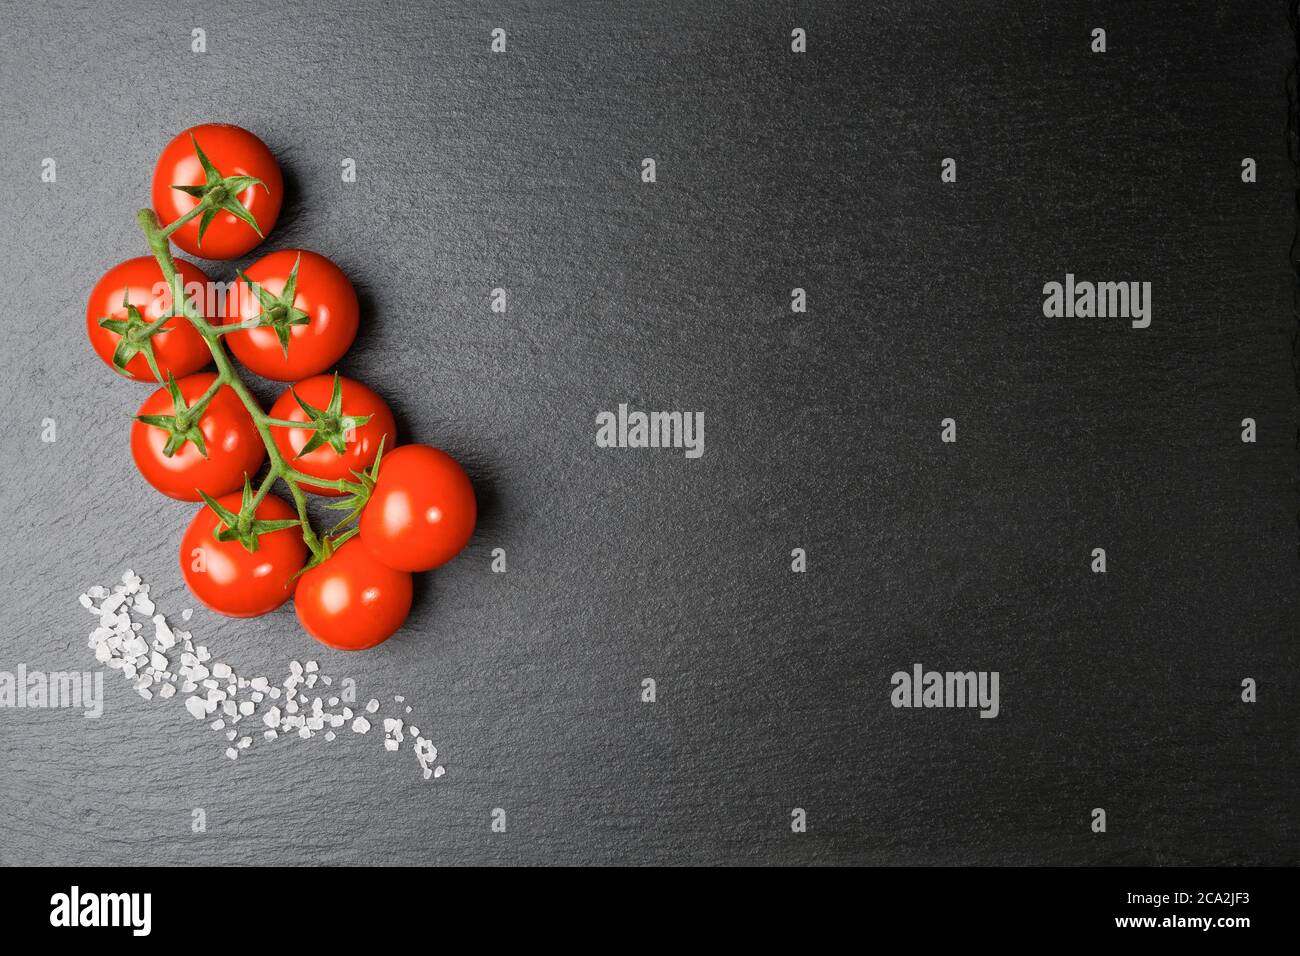 Une branche de tomates cerises avec quelques grains de sel épais sur une dalle d'ardoise Banque D'Images